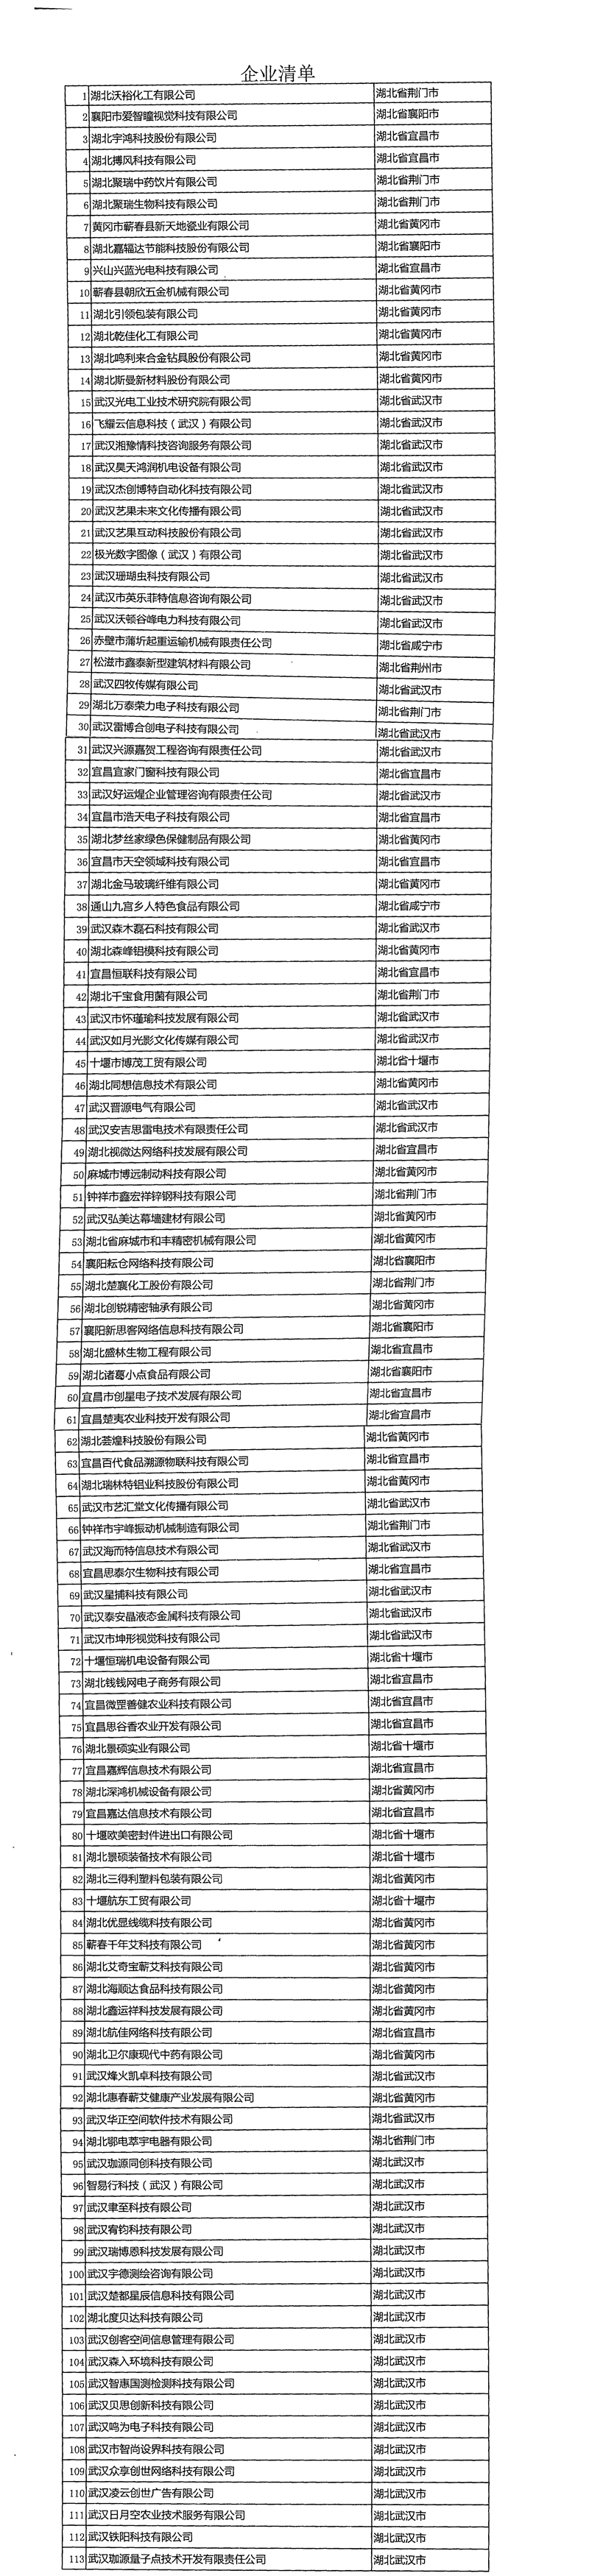 湖北省2019年第一十五批拟入库科技型中小企业名单公示企业清单.jpg